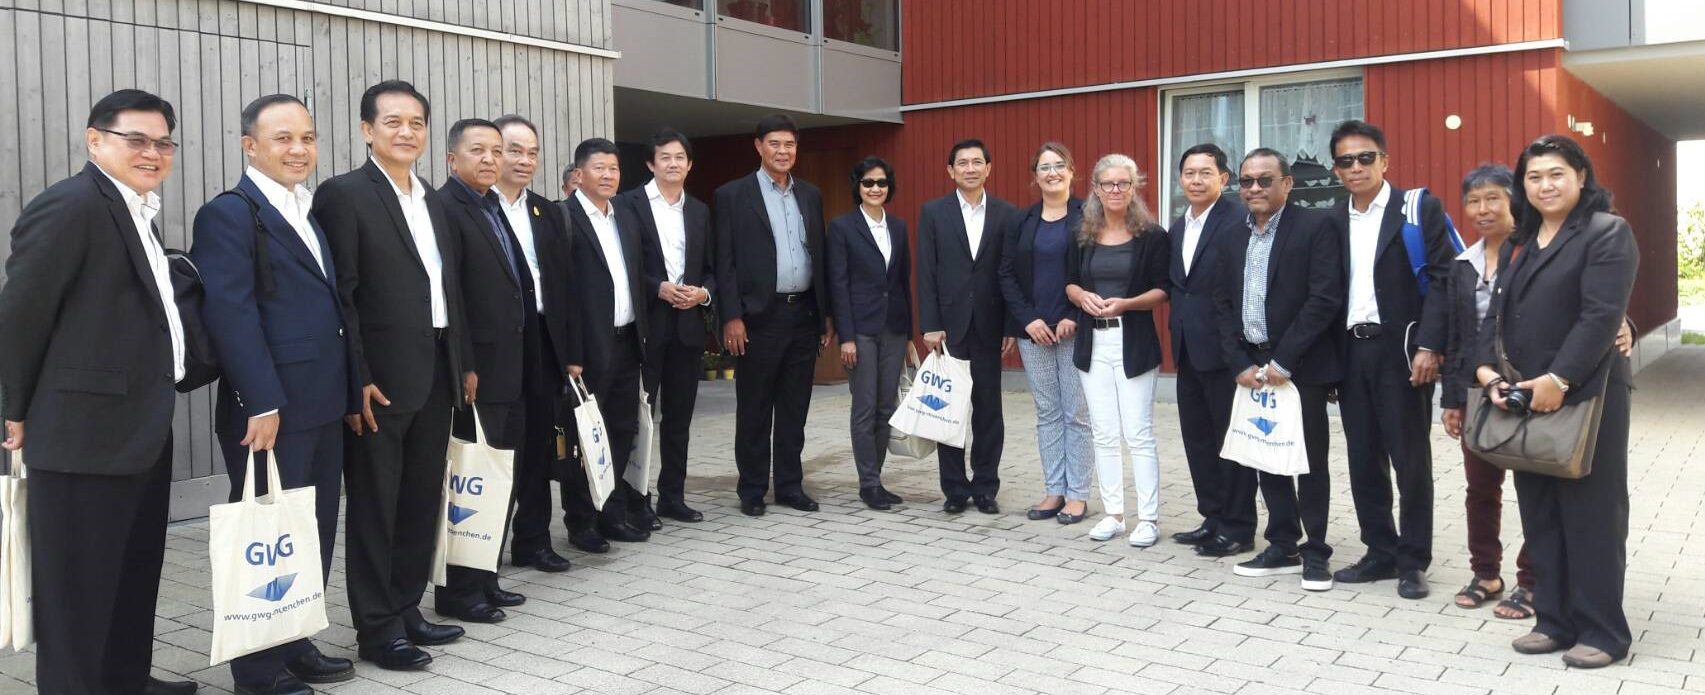 Eine überzeugende Ökobilanz - Modellprojekt in Holzbauweise – auch Delegation aus Thailand besucht die GWG München